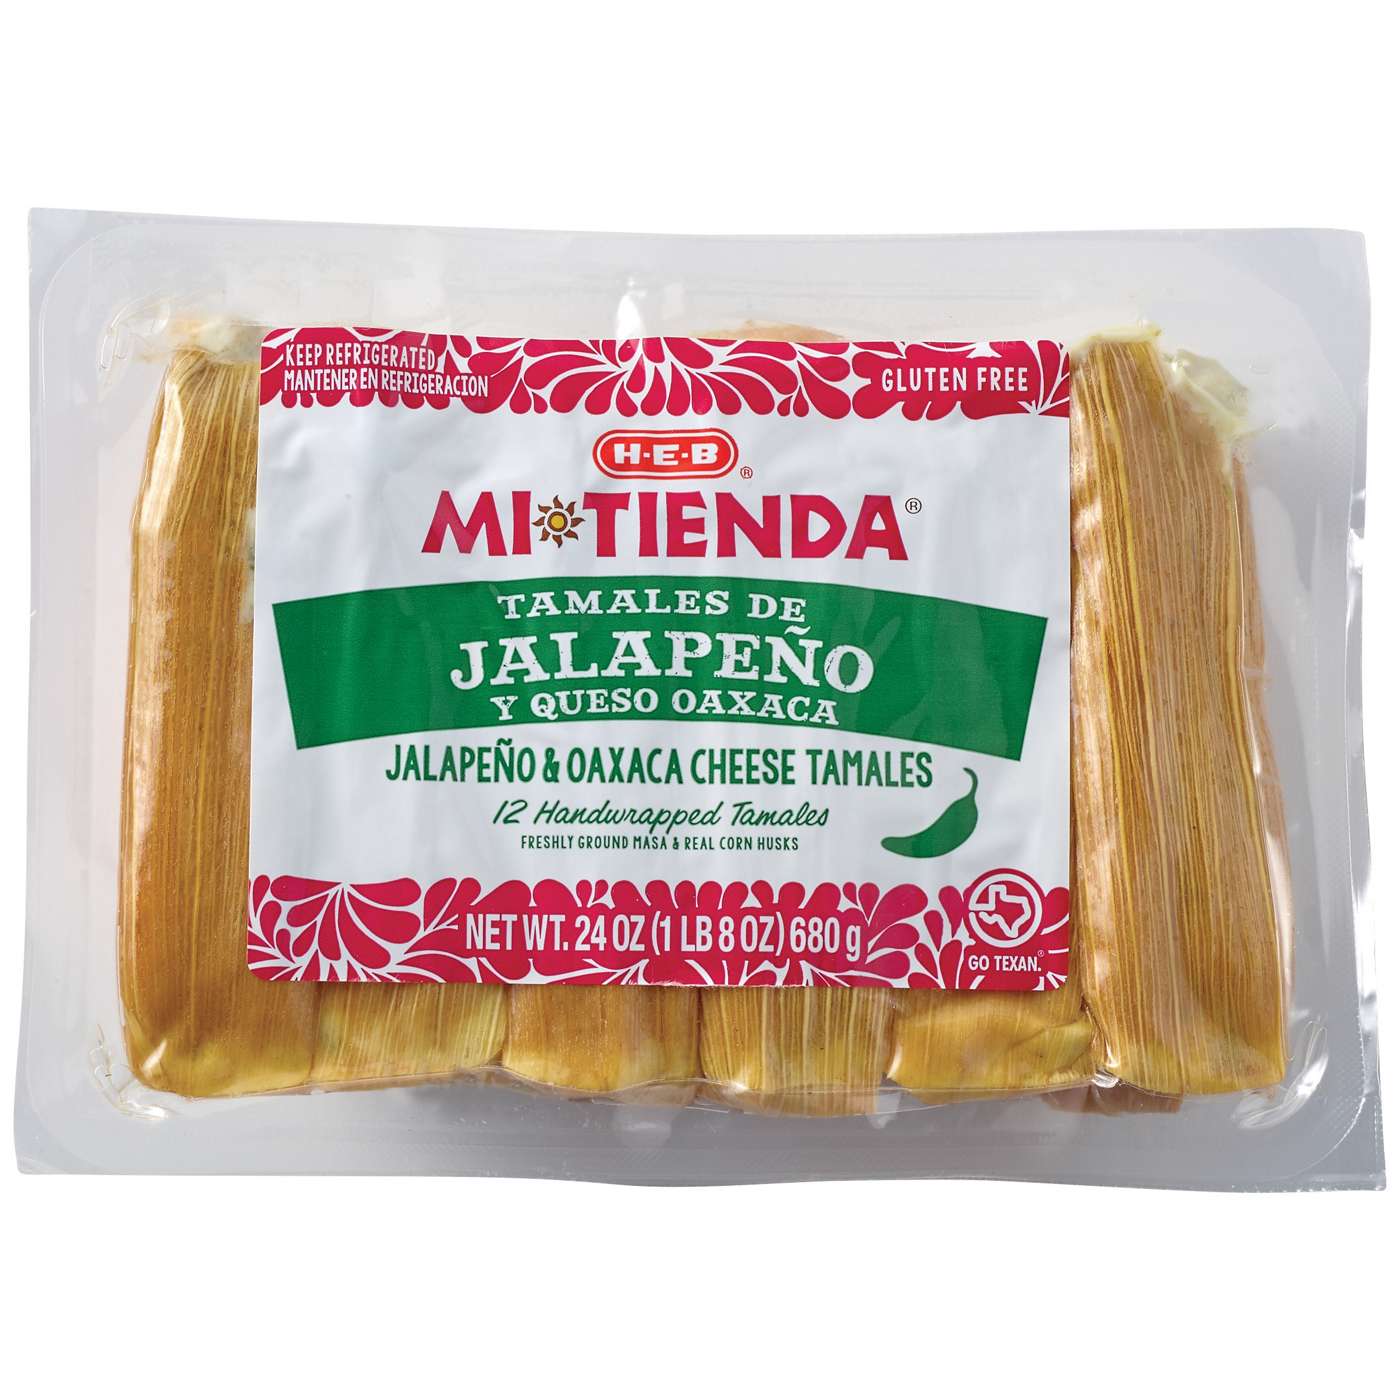 H-E-B Mi Tienda Jalapeno Oaxaca Cheese Tamales de Jalapeno y Queso; image 1 of 2